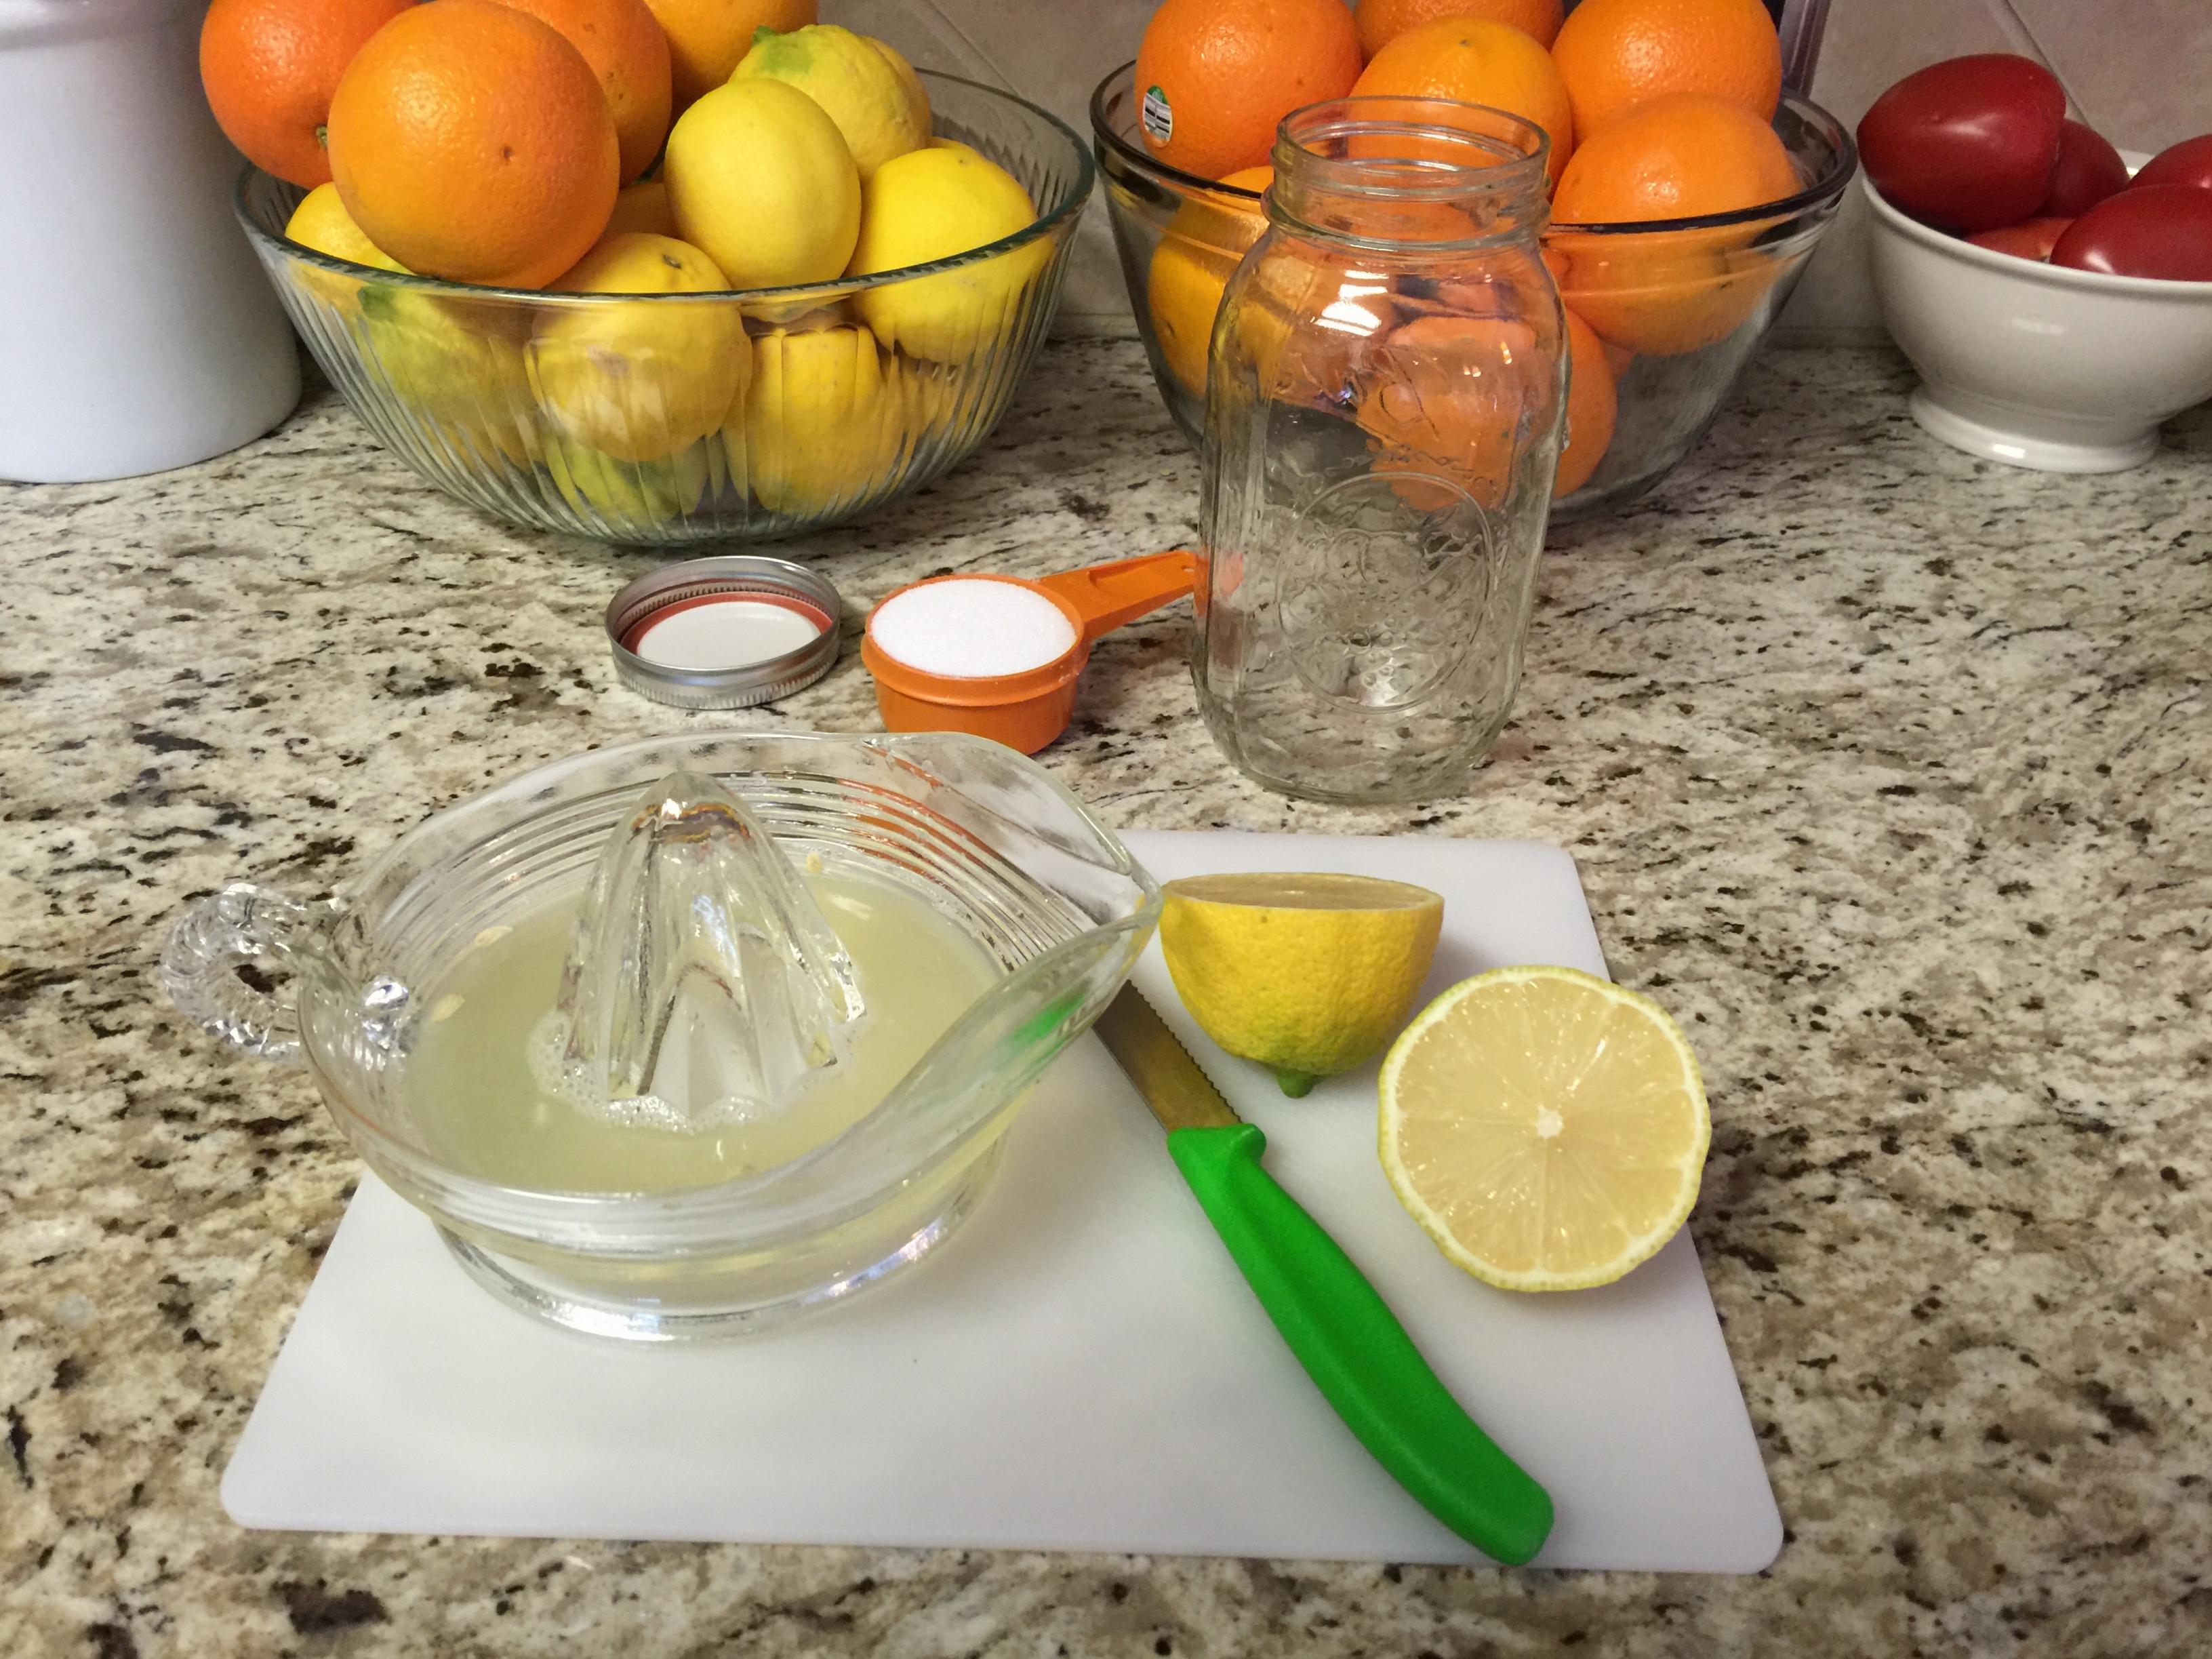 Making Homemade Lemonade